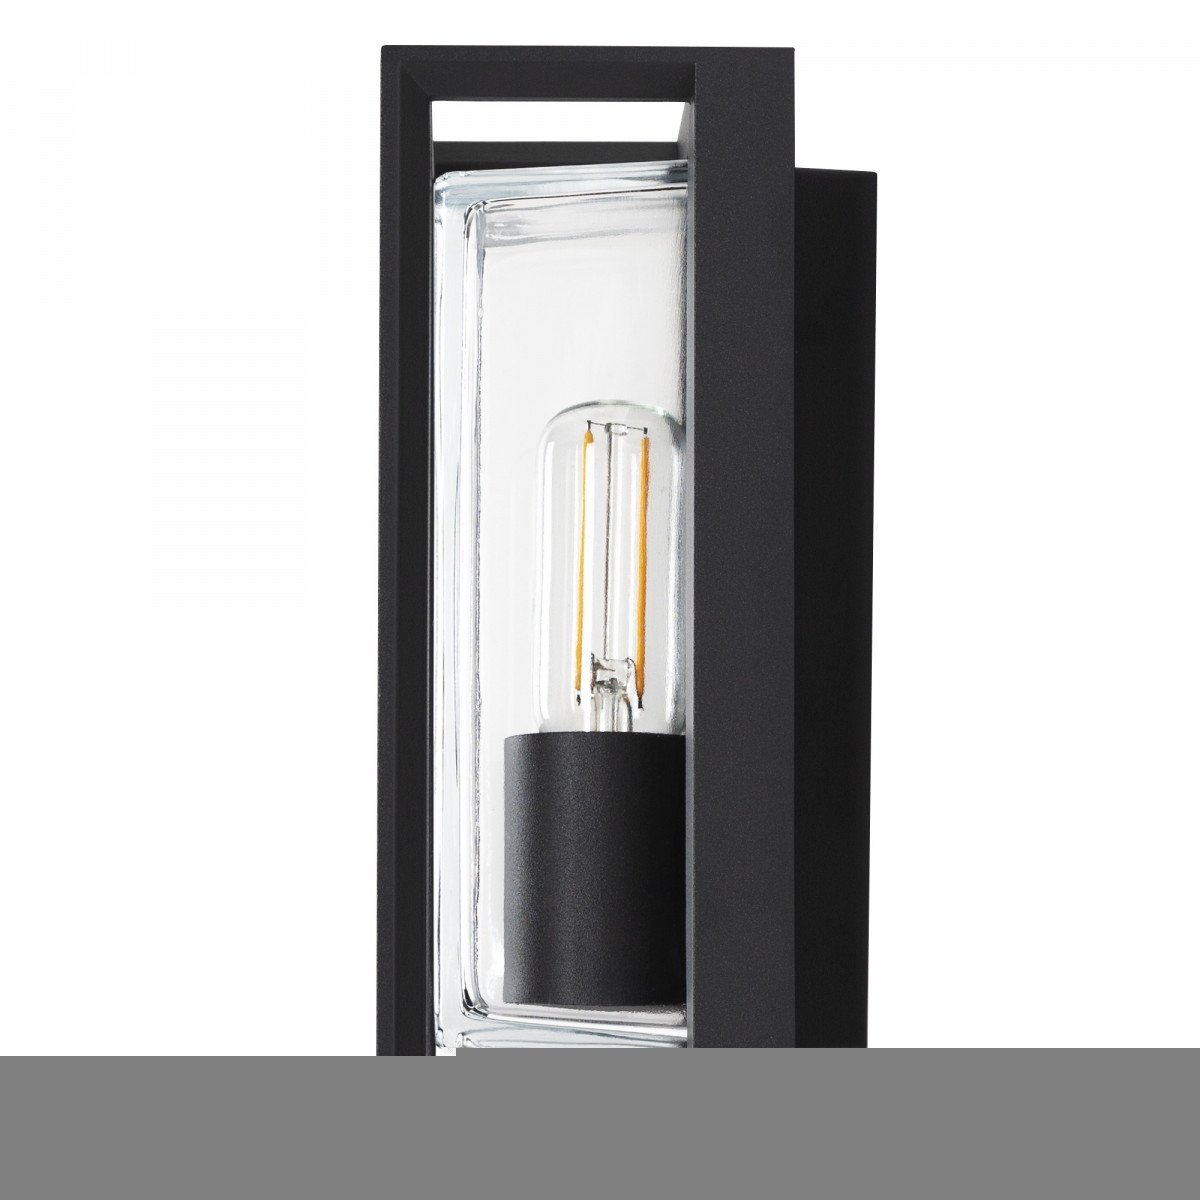 Eaton wandlamp zwart, stijlvol strak vormgegeven wandverlichting voor buiten met heldere beglazing, buitenverlichting wandverlichting modern  KS Verlichting